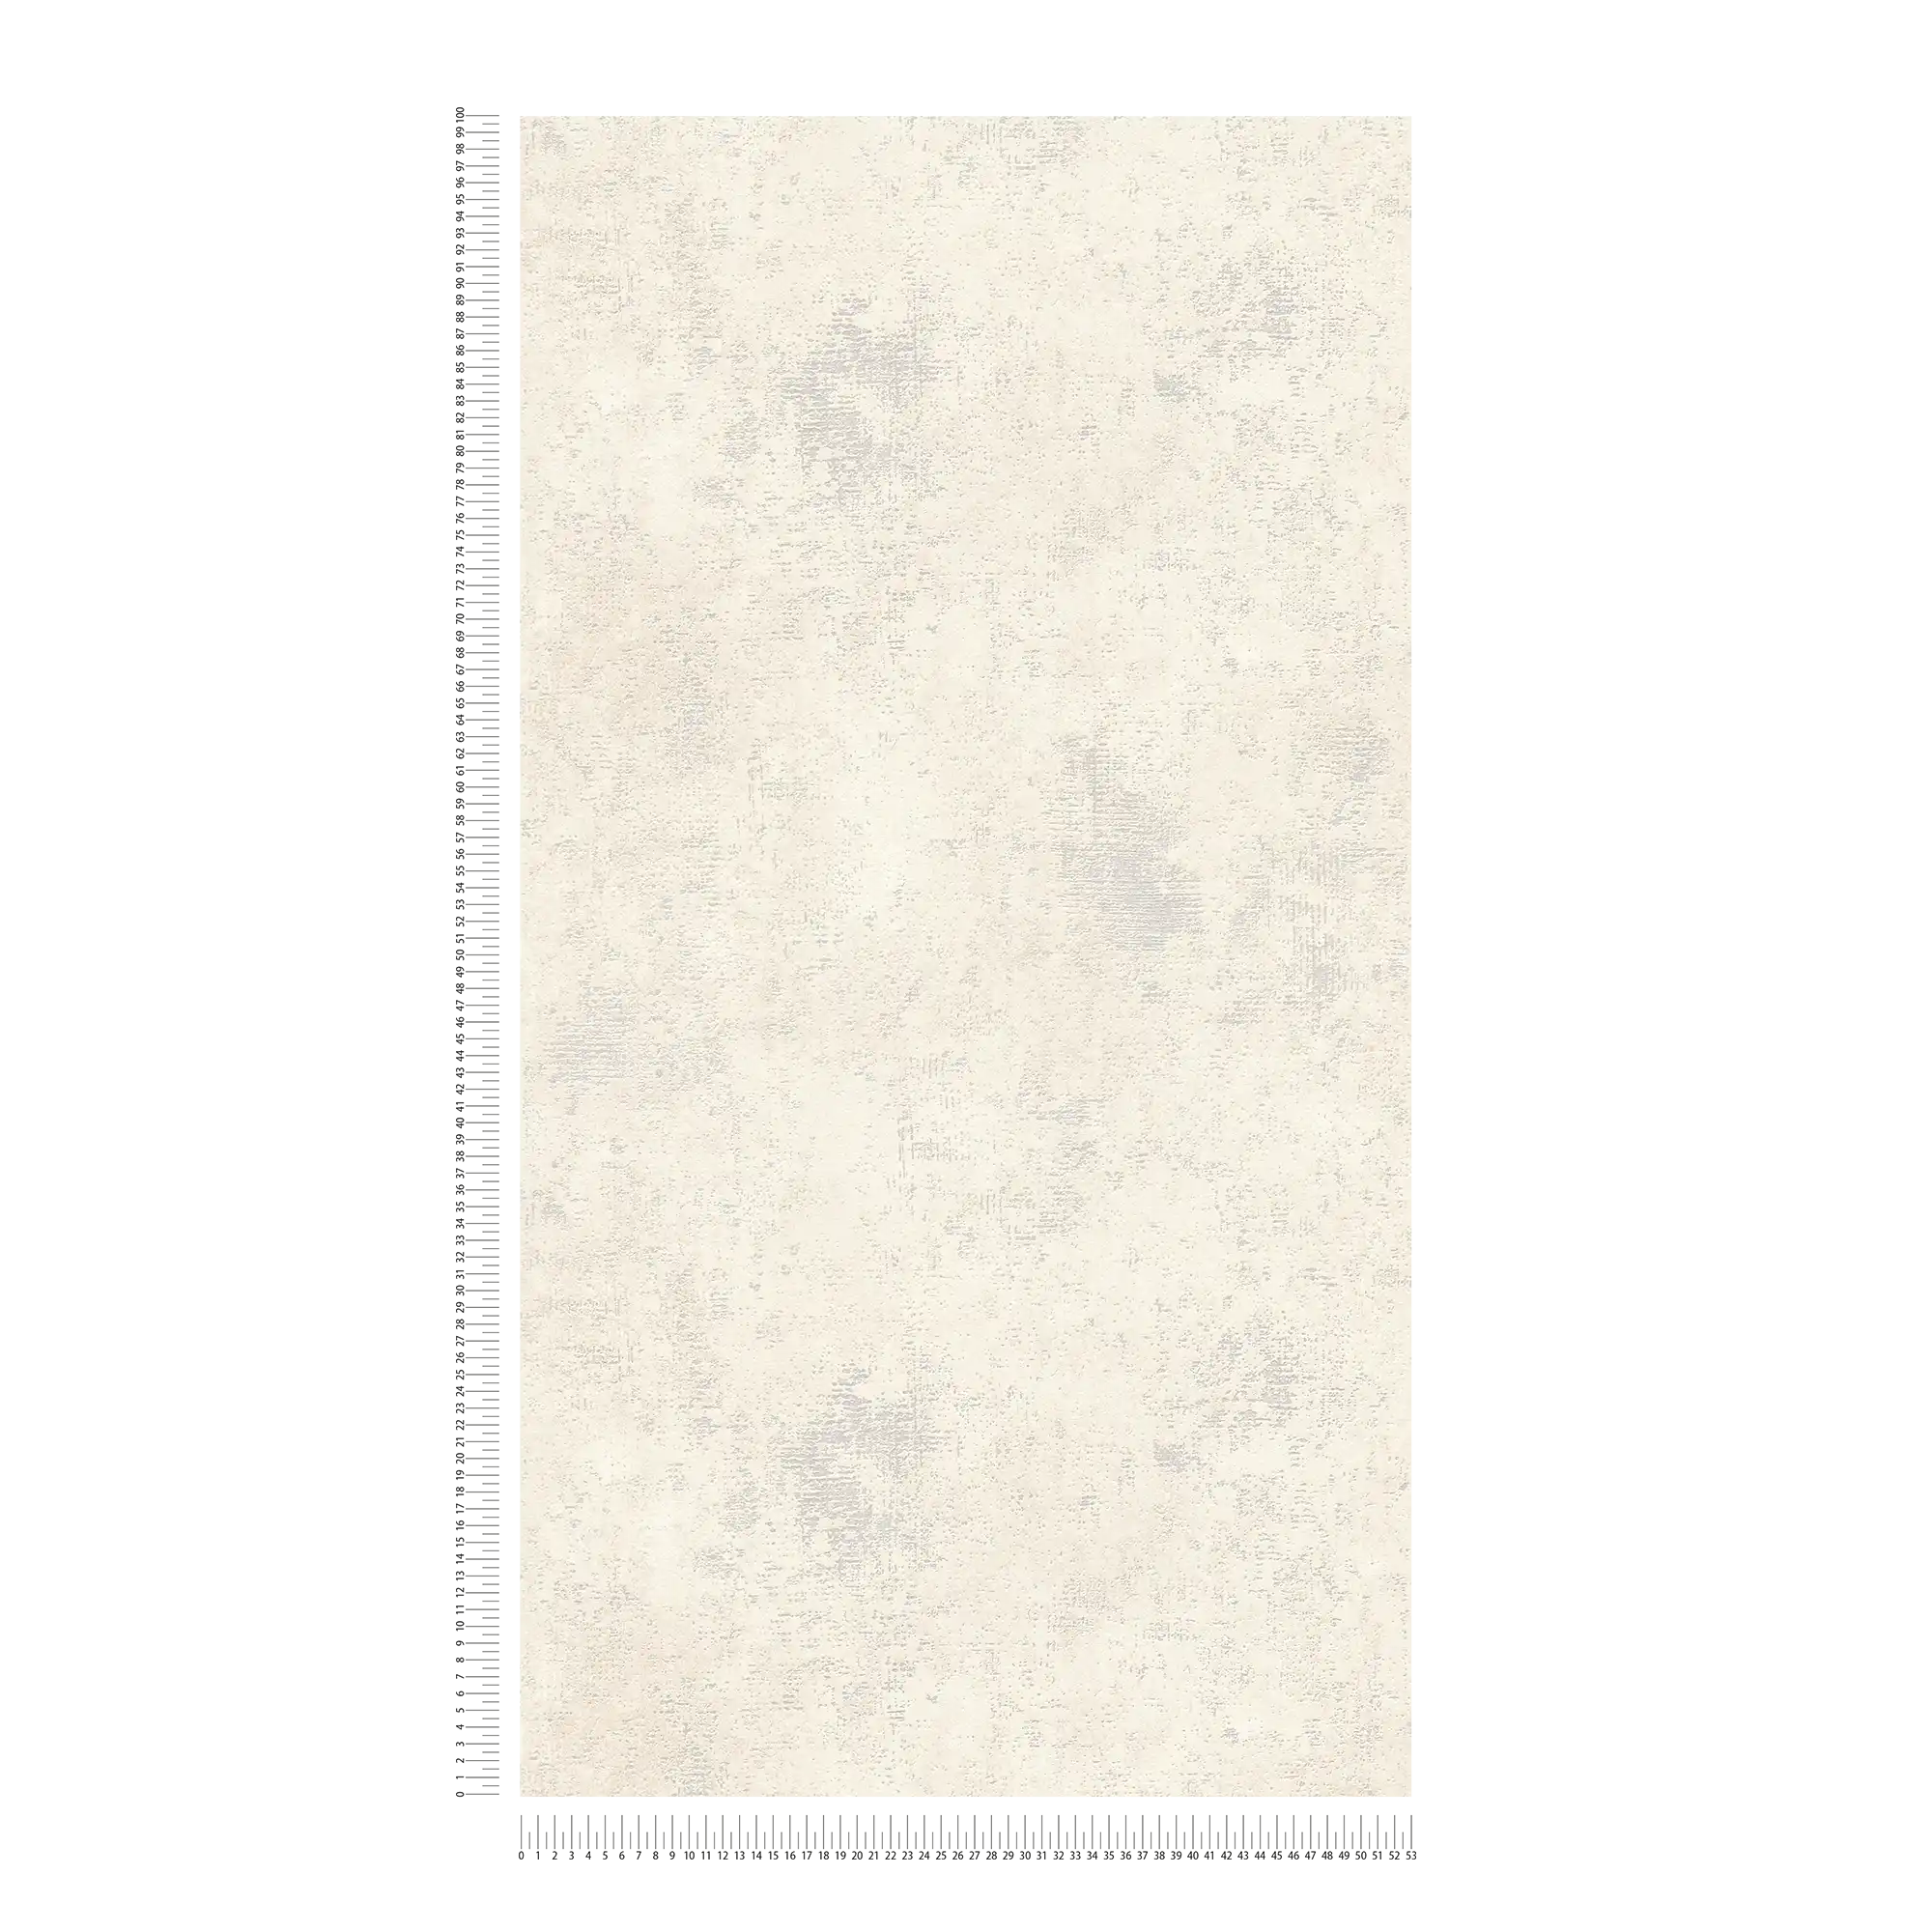             Papel pintado no tejido de color crema con textura de yeso
        